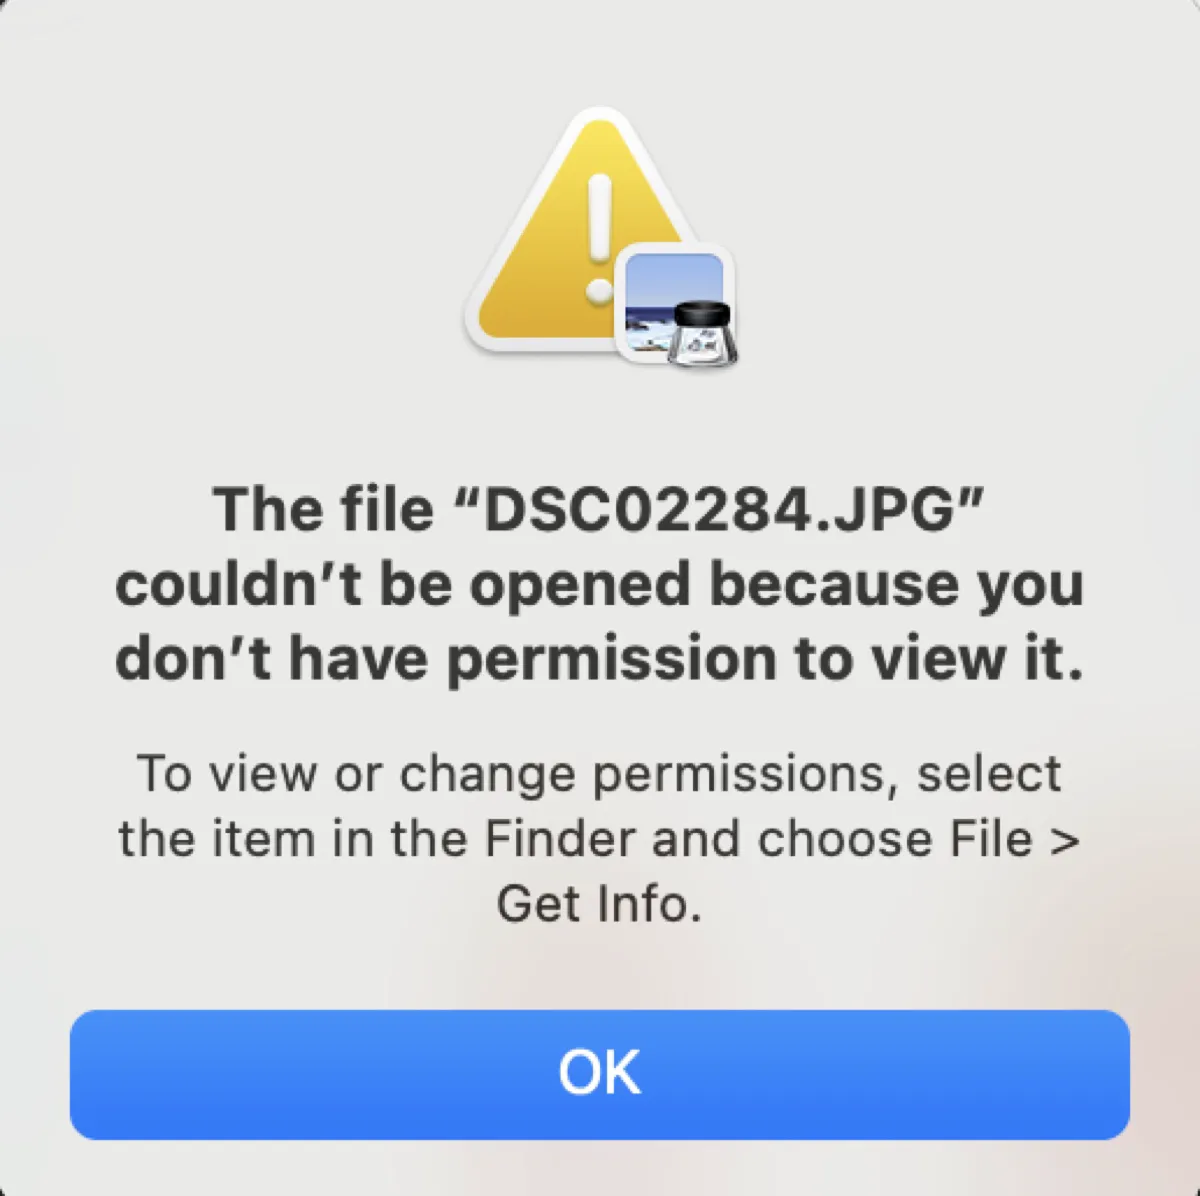 Le fichier ne peut pas être ouvert car vous n'avez pas les permissions nécessaires pour le visualiser